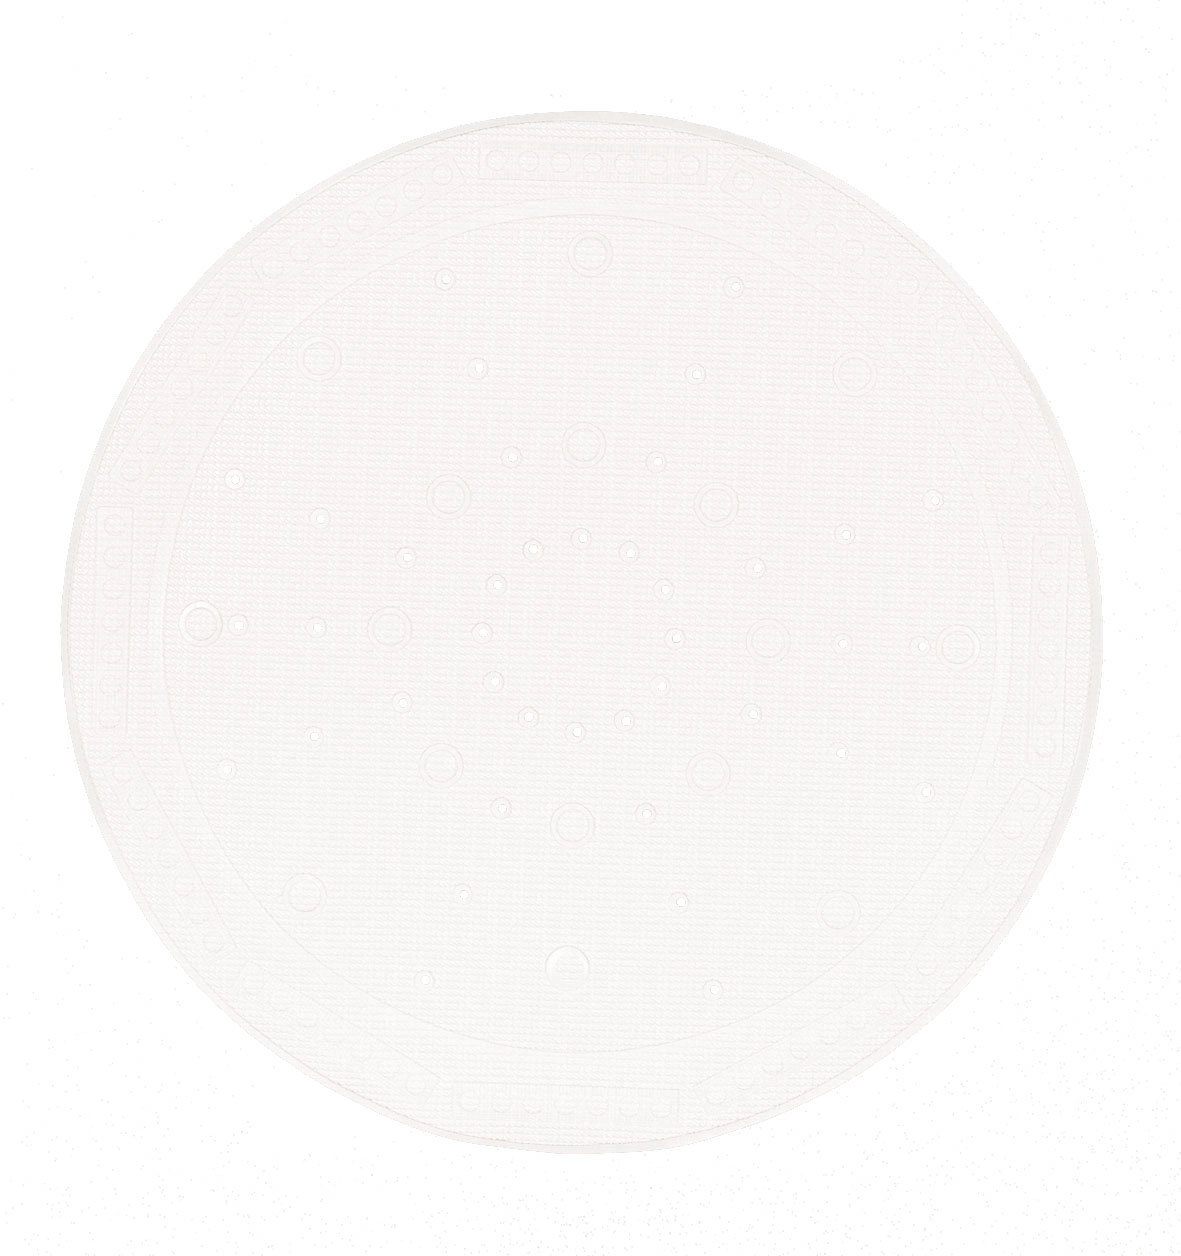 Duscheinlage, Arosa Weiß, 55x 55 cm